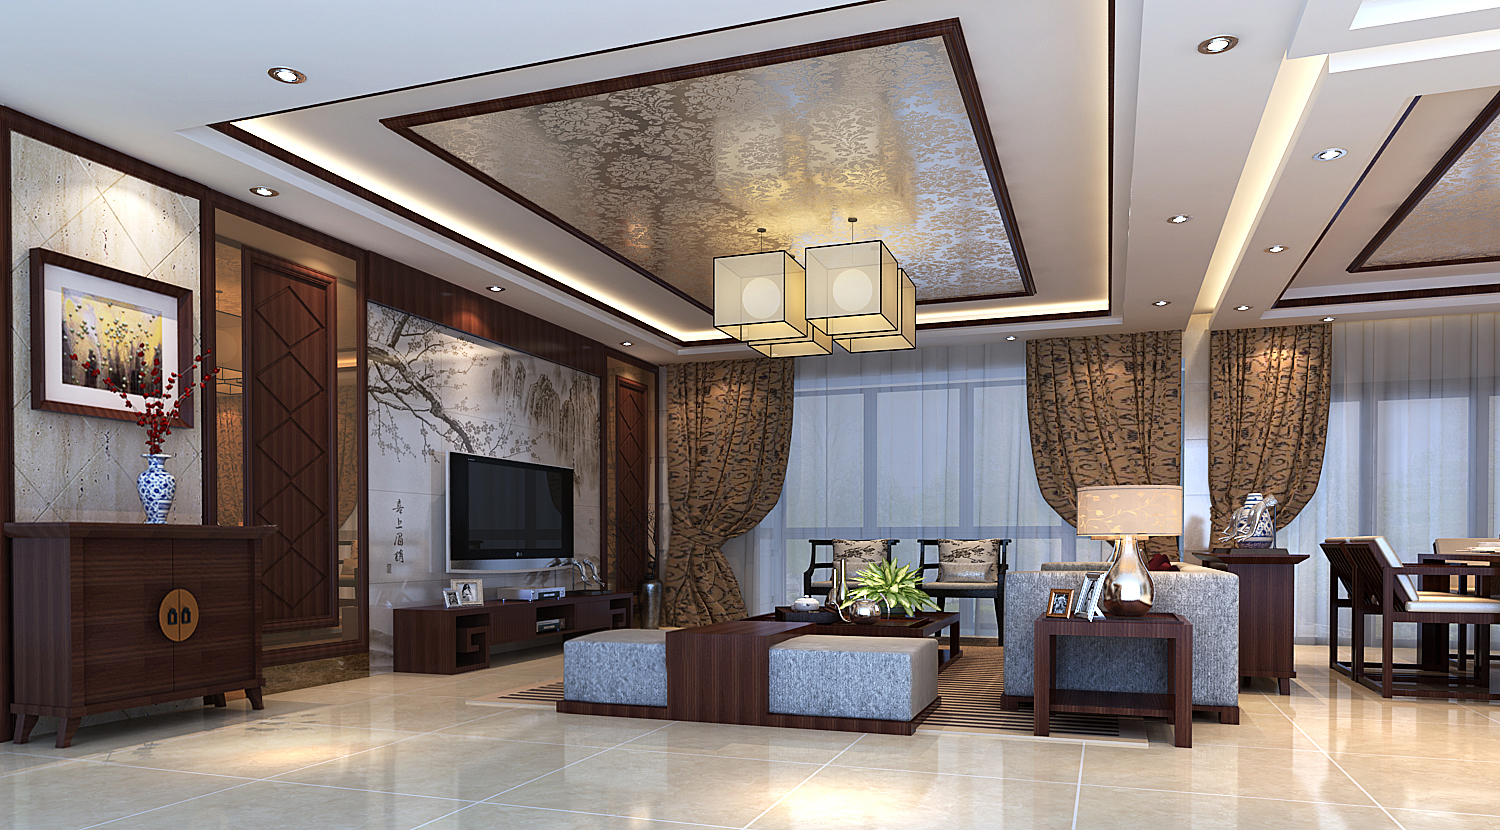 新中式风格-4居室-大气、奢华、上档次。